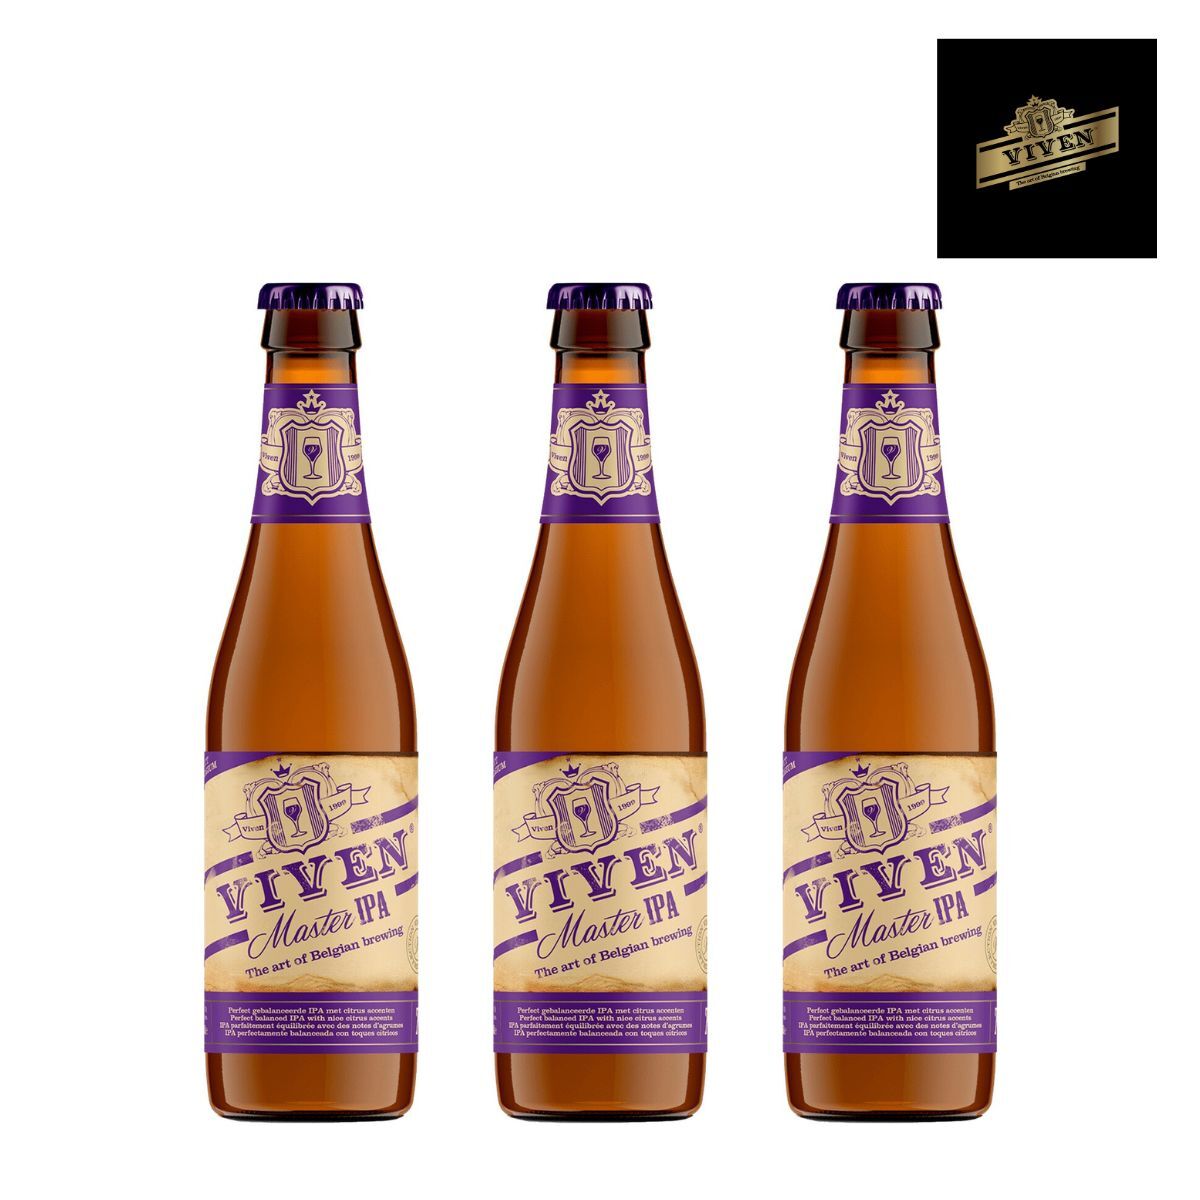 Viven Master IPA Belgium Beer 330ml * 3 Bottles (Random for old/new packaging)